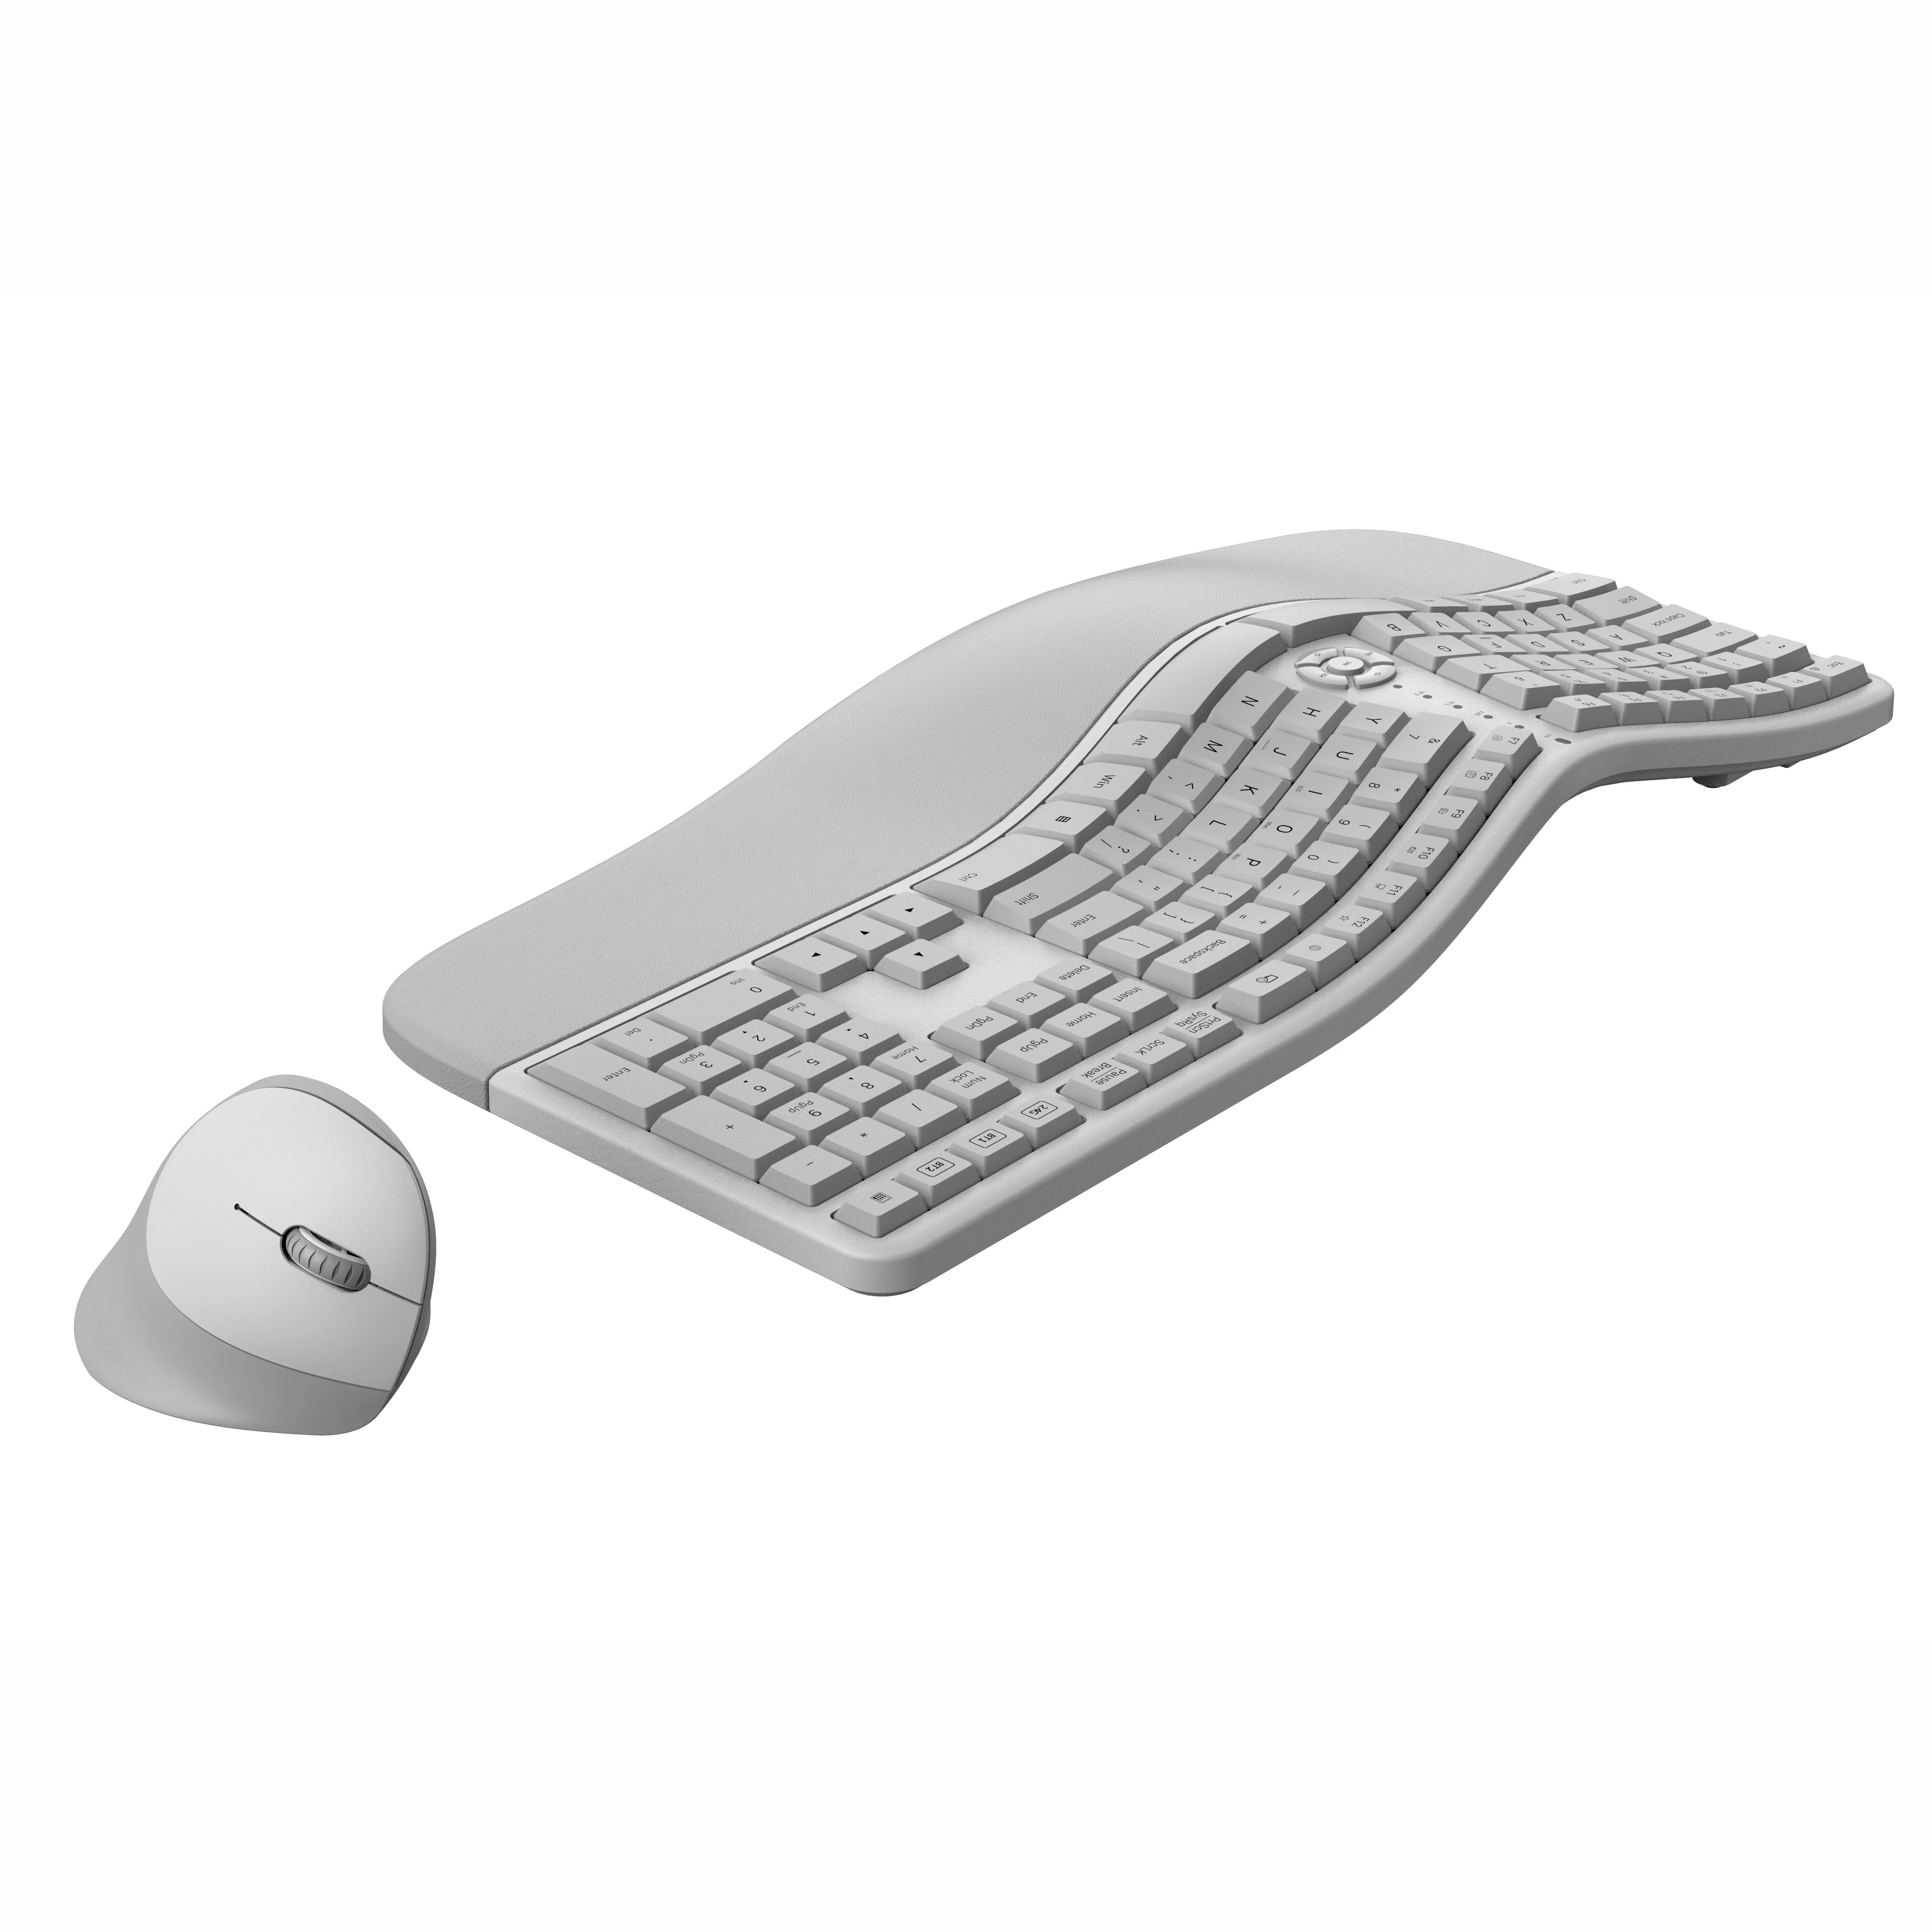 ergonomic wireless keyboard and mouse